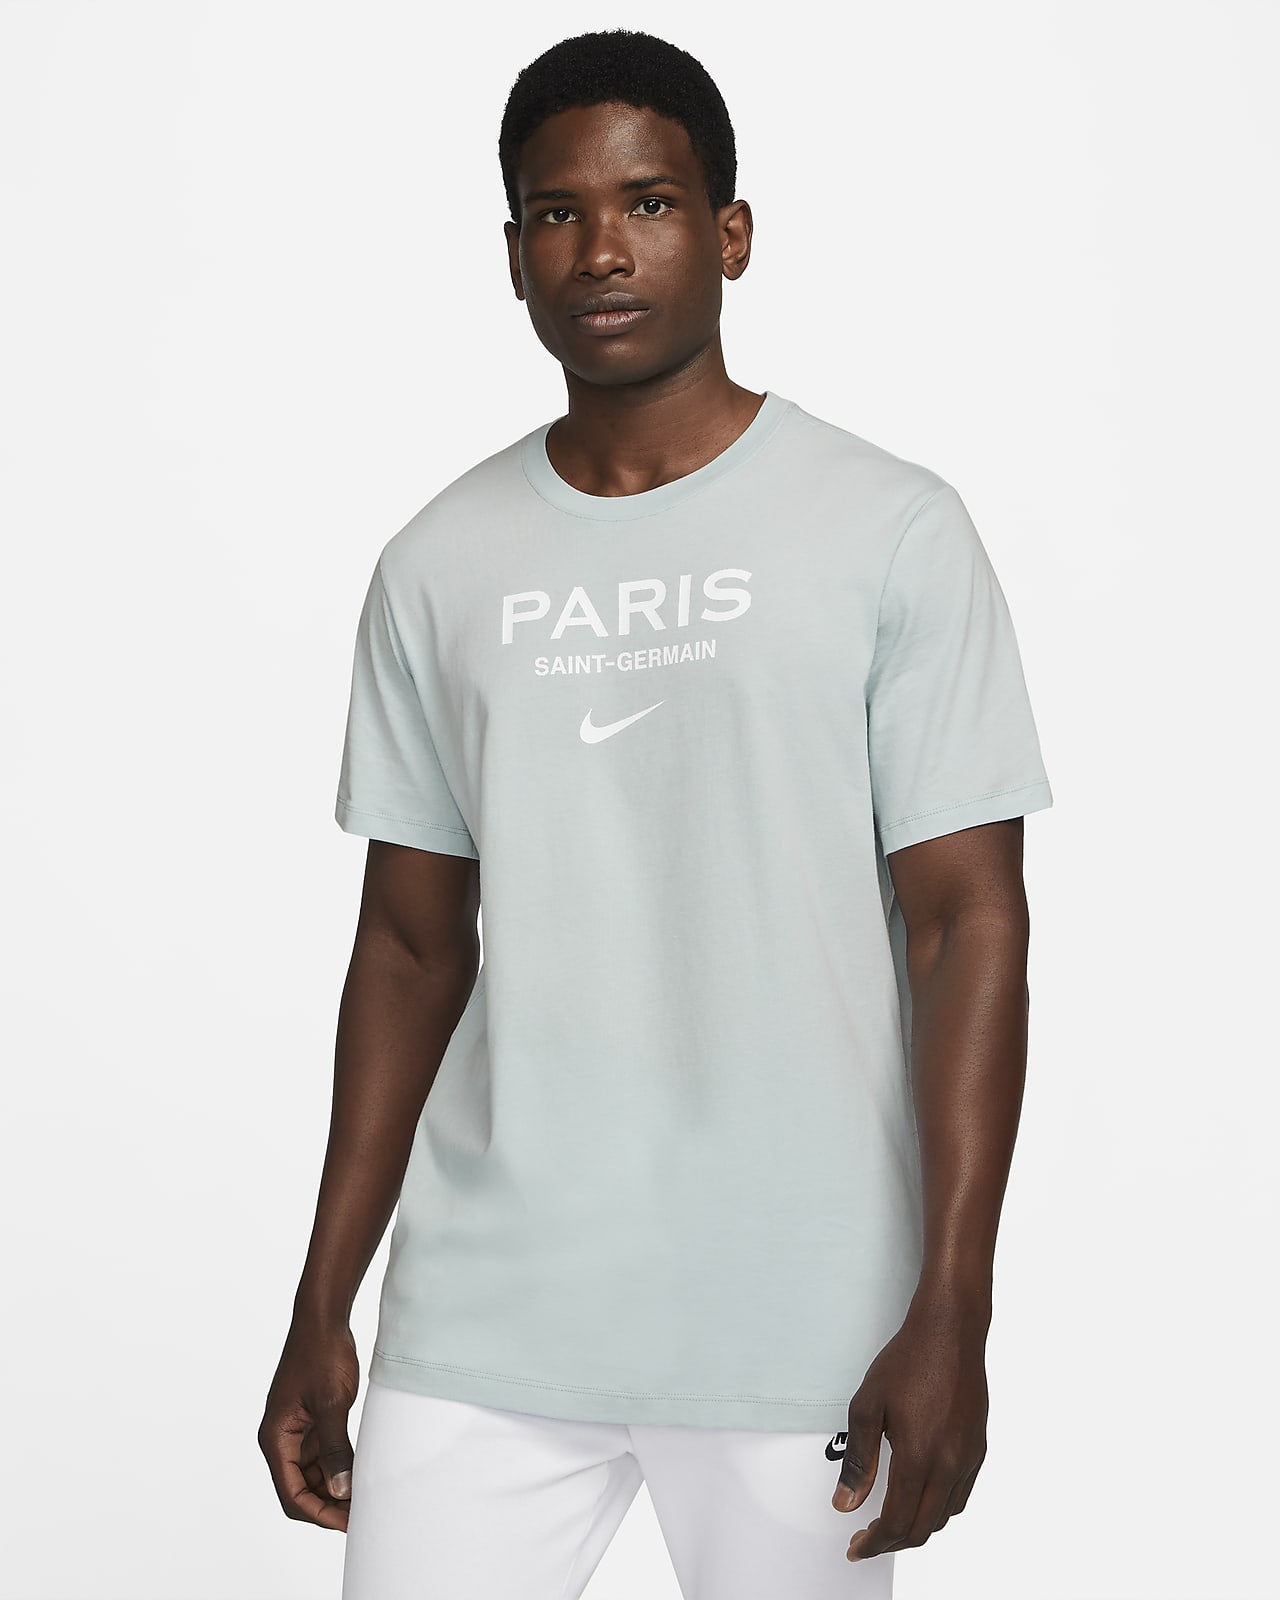 Array Tørke sikkerhedsstillelse Paris Saint-Germain Swoosh Men's Soccer T-Shirt. Nike.com